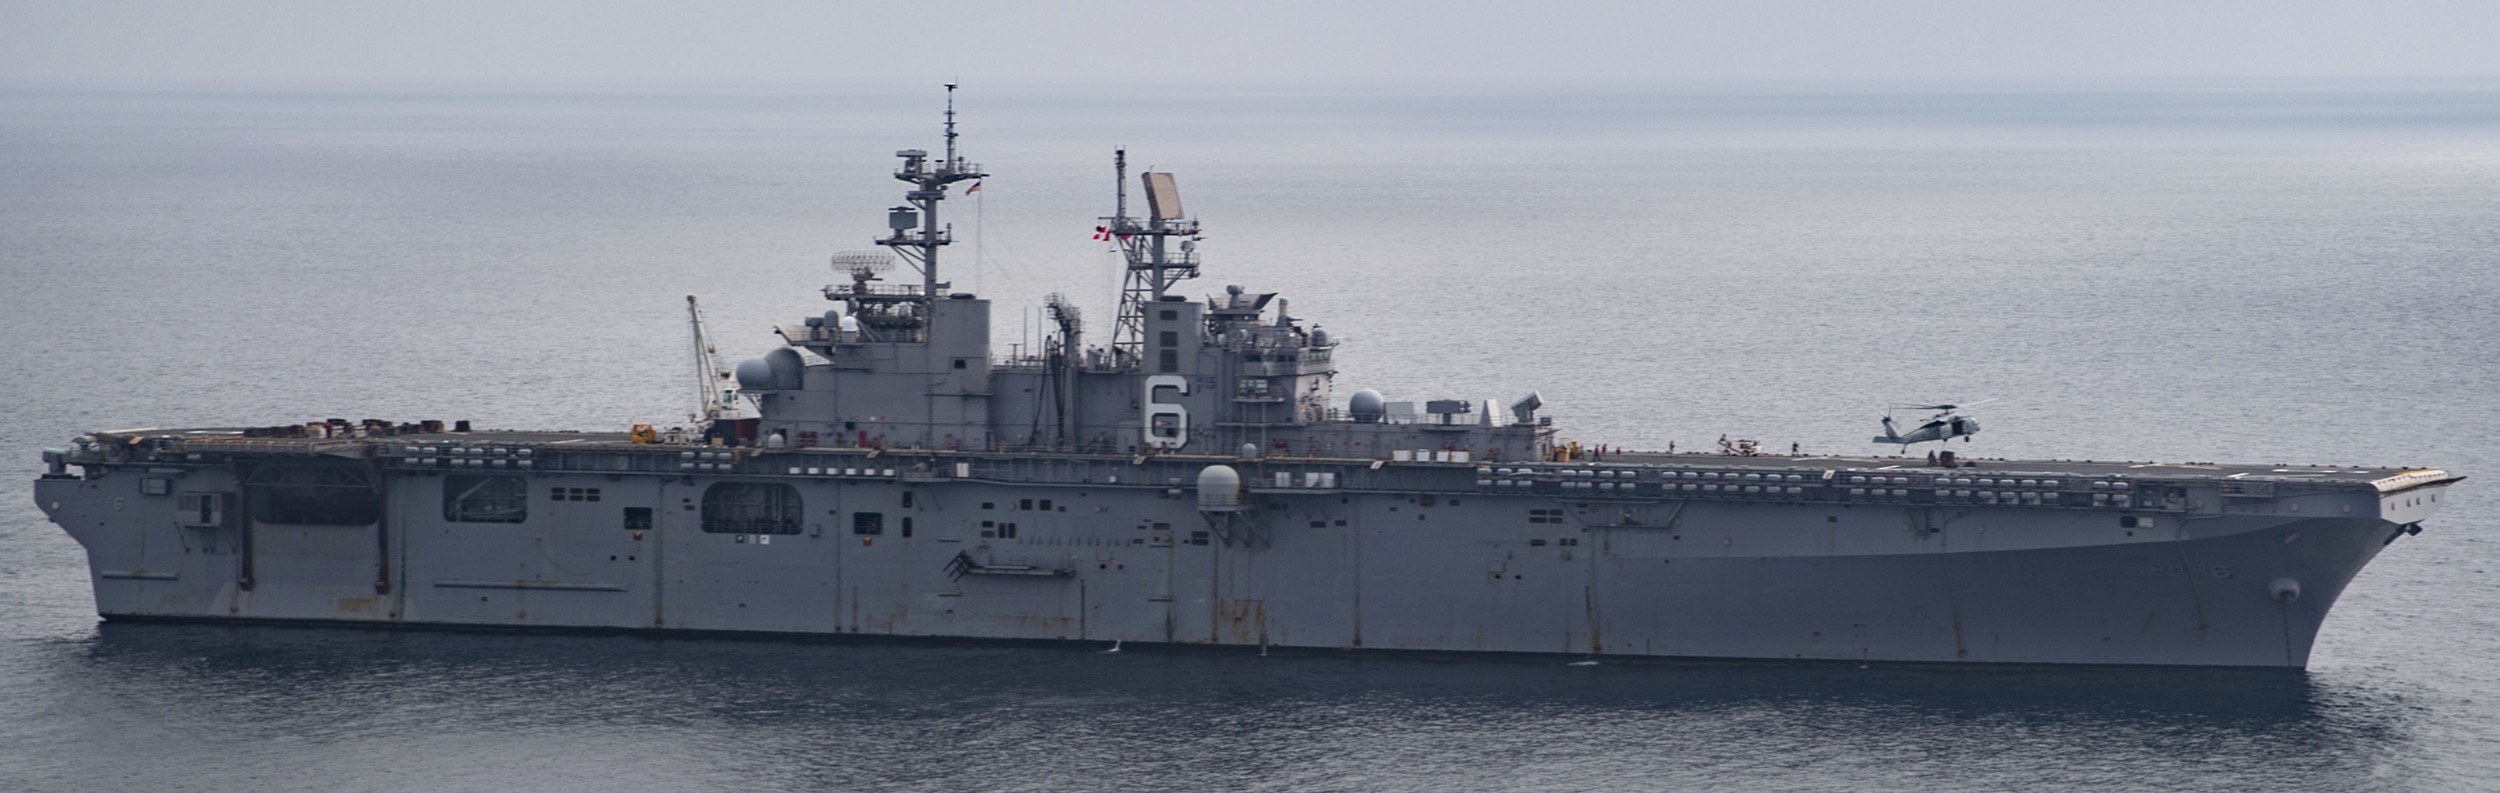 lhd-6 uss bonhomme richard amphibious assault ship landing helicopter dock wasp class 17